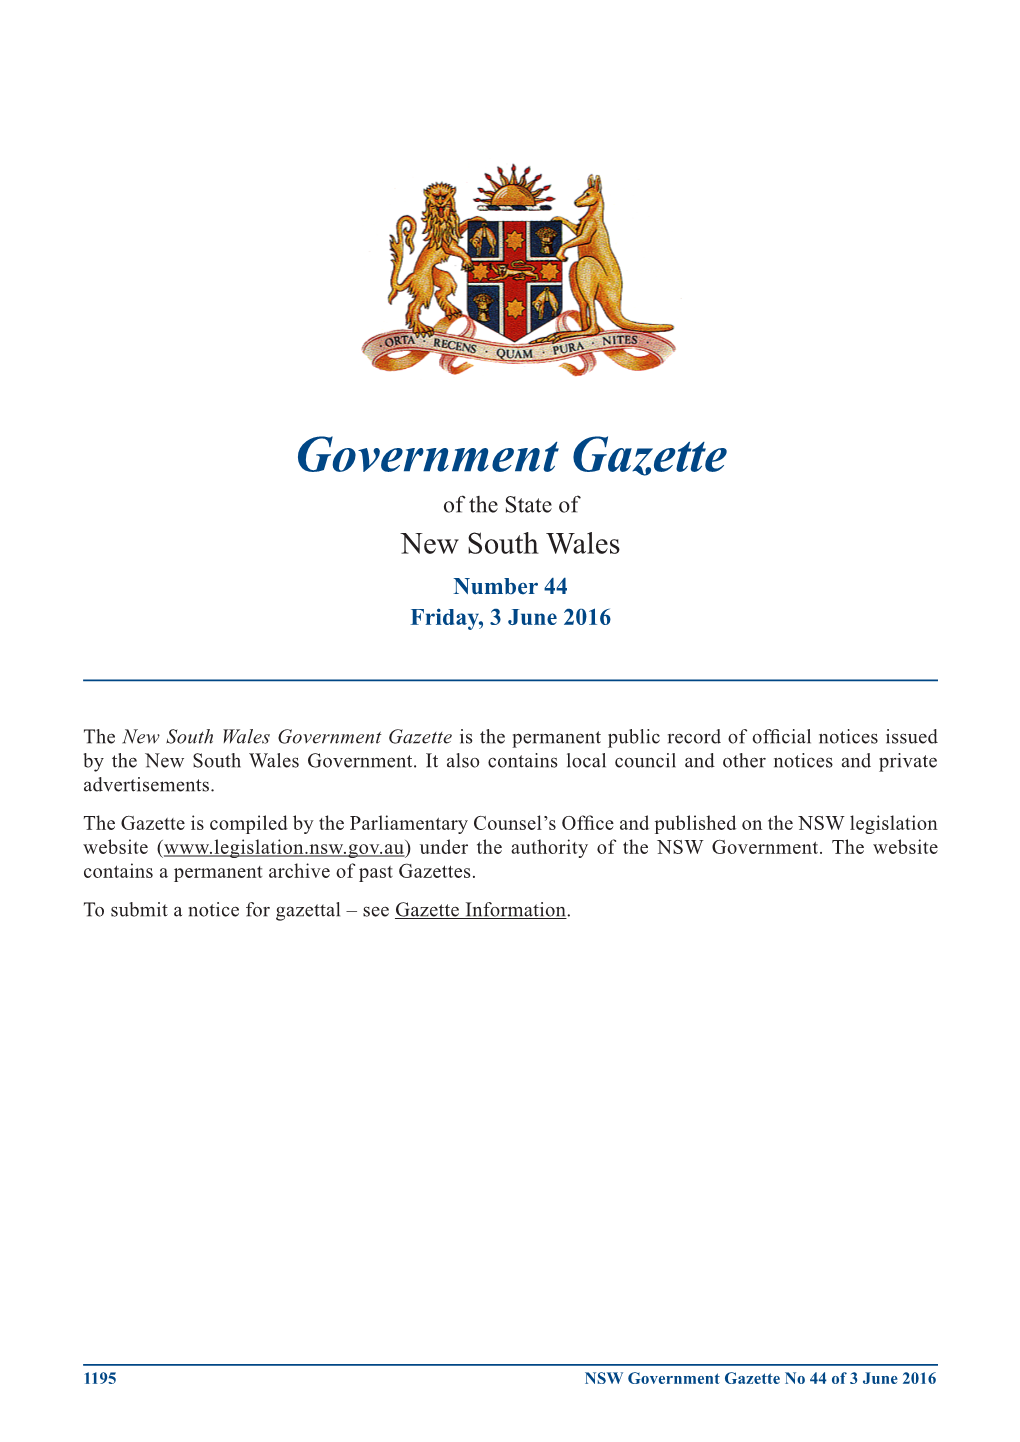 Government Gazette No 44 of 3 June 2016